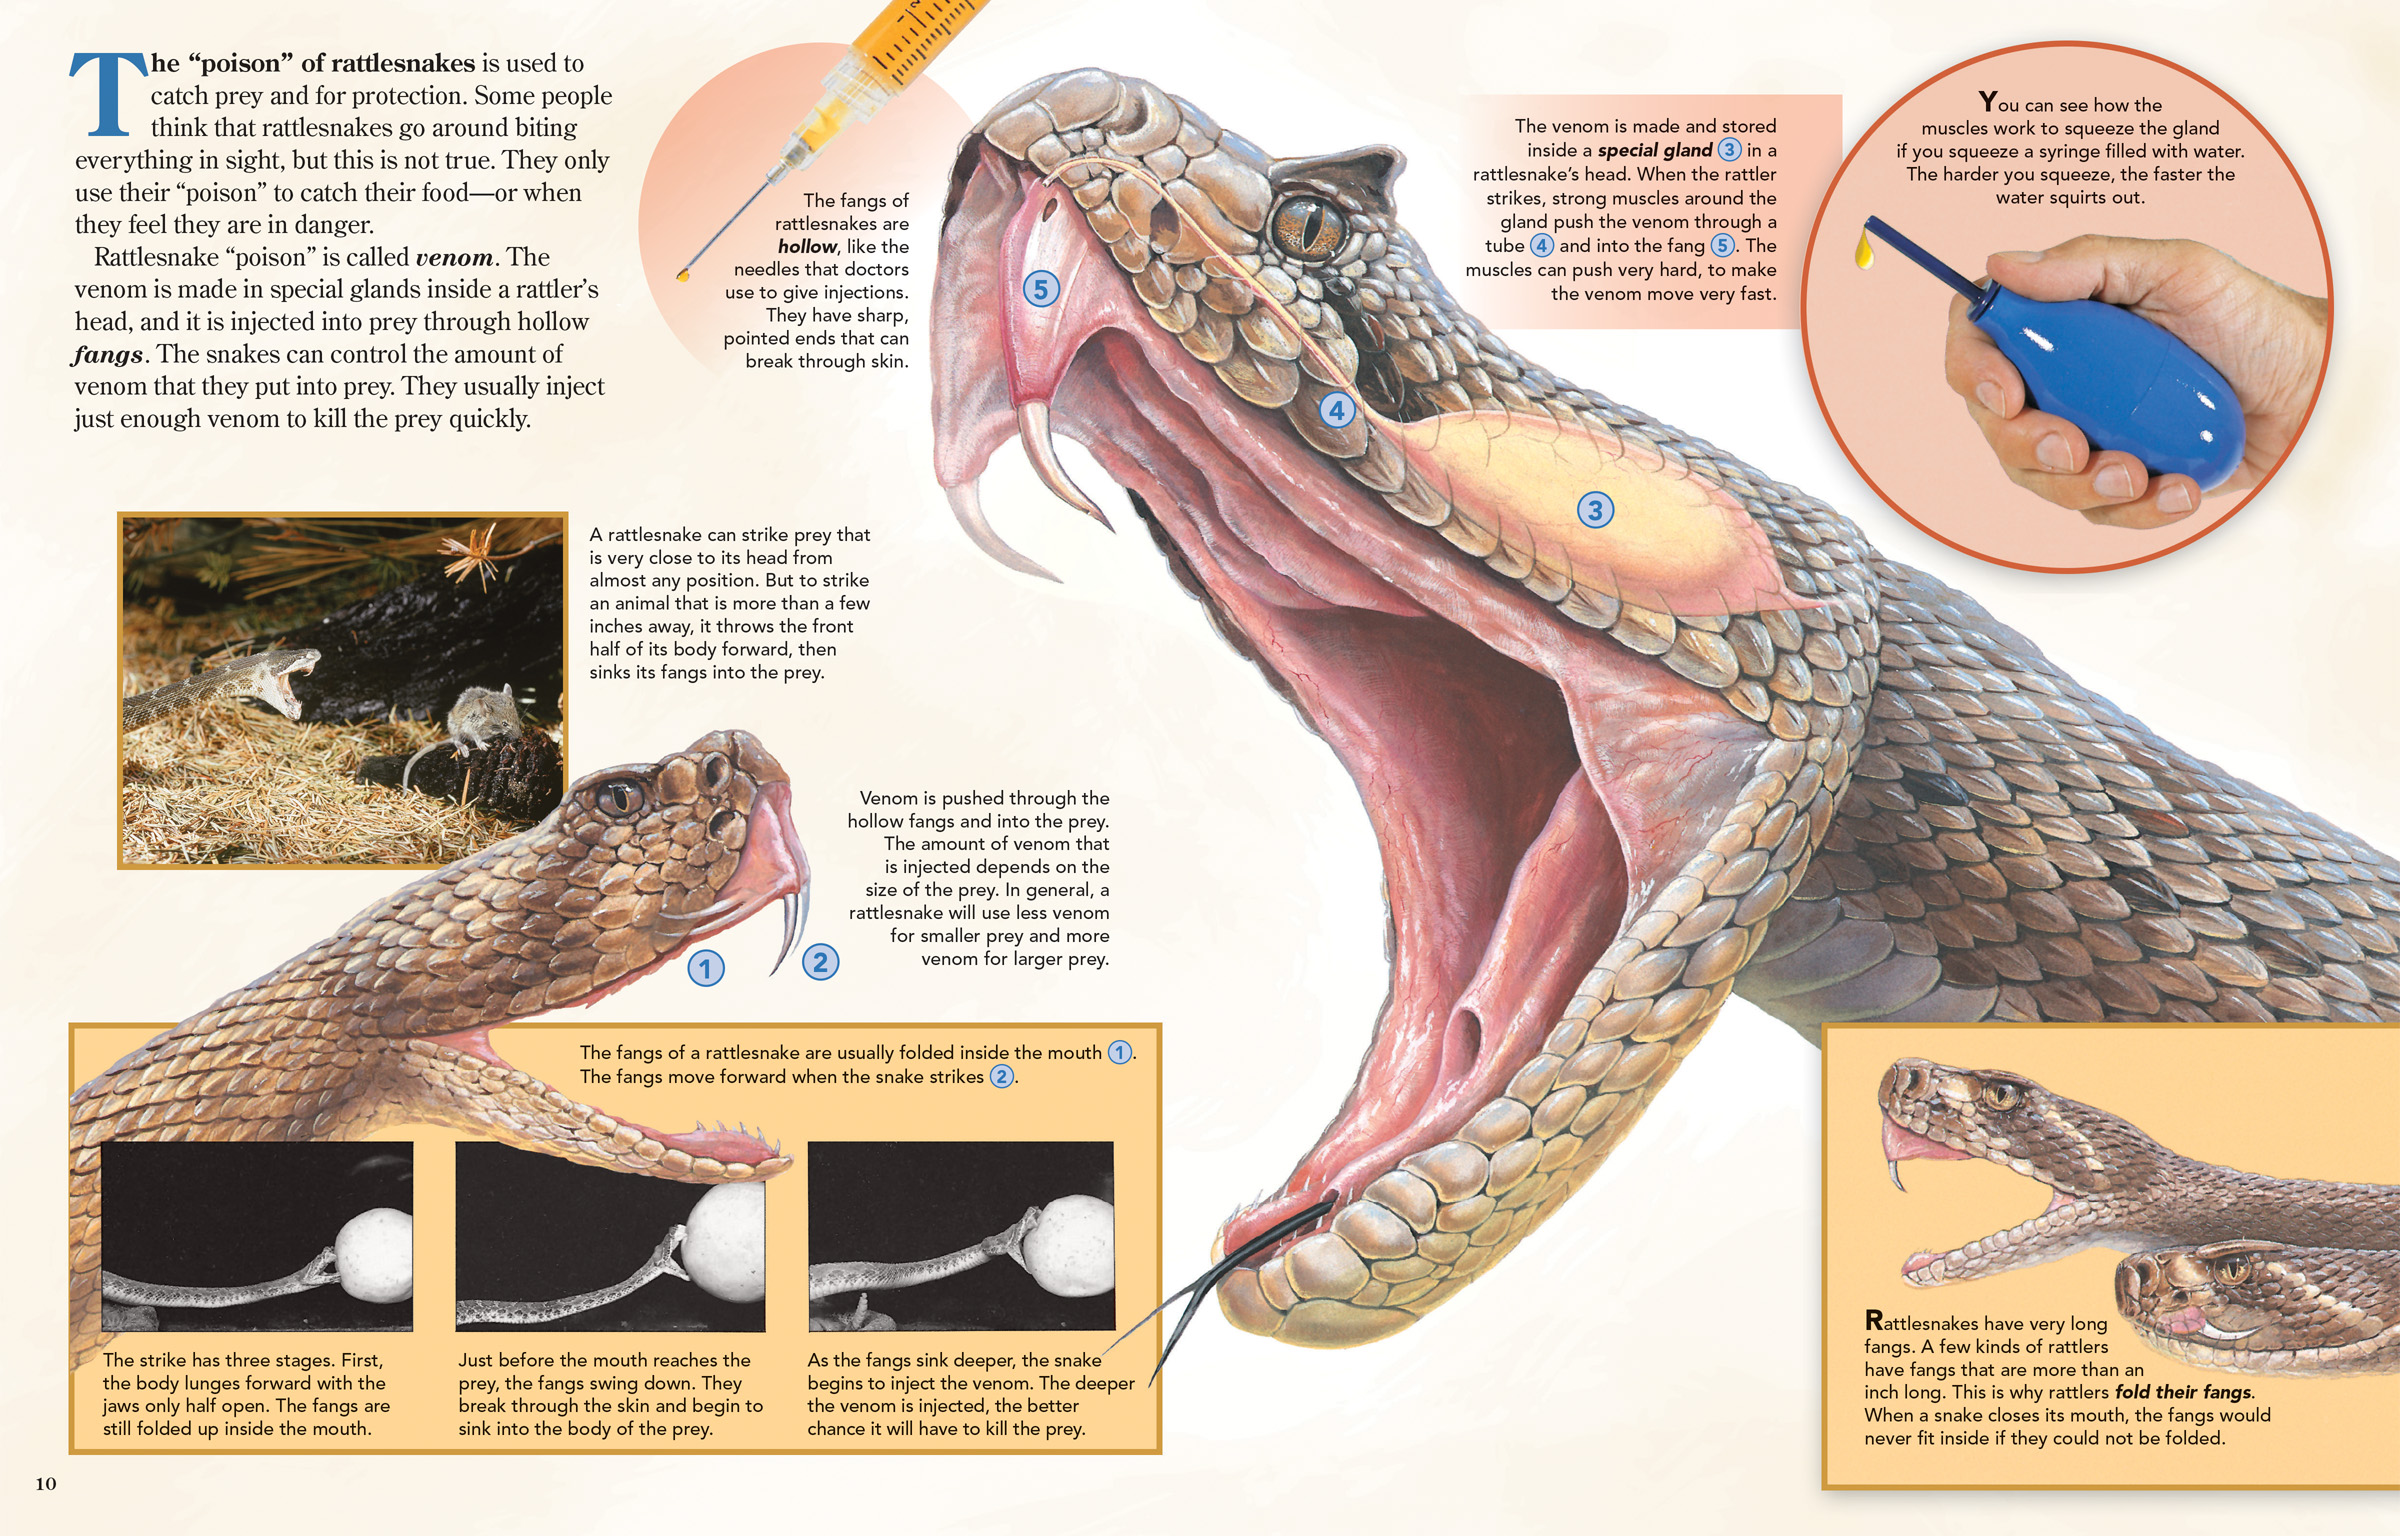 How to Kill Rattlesnakes?